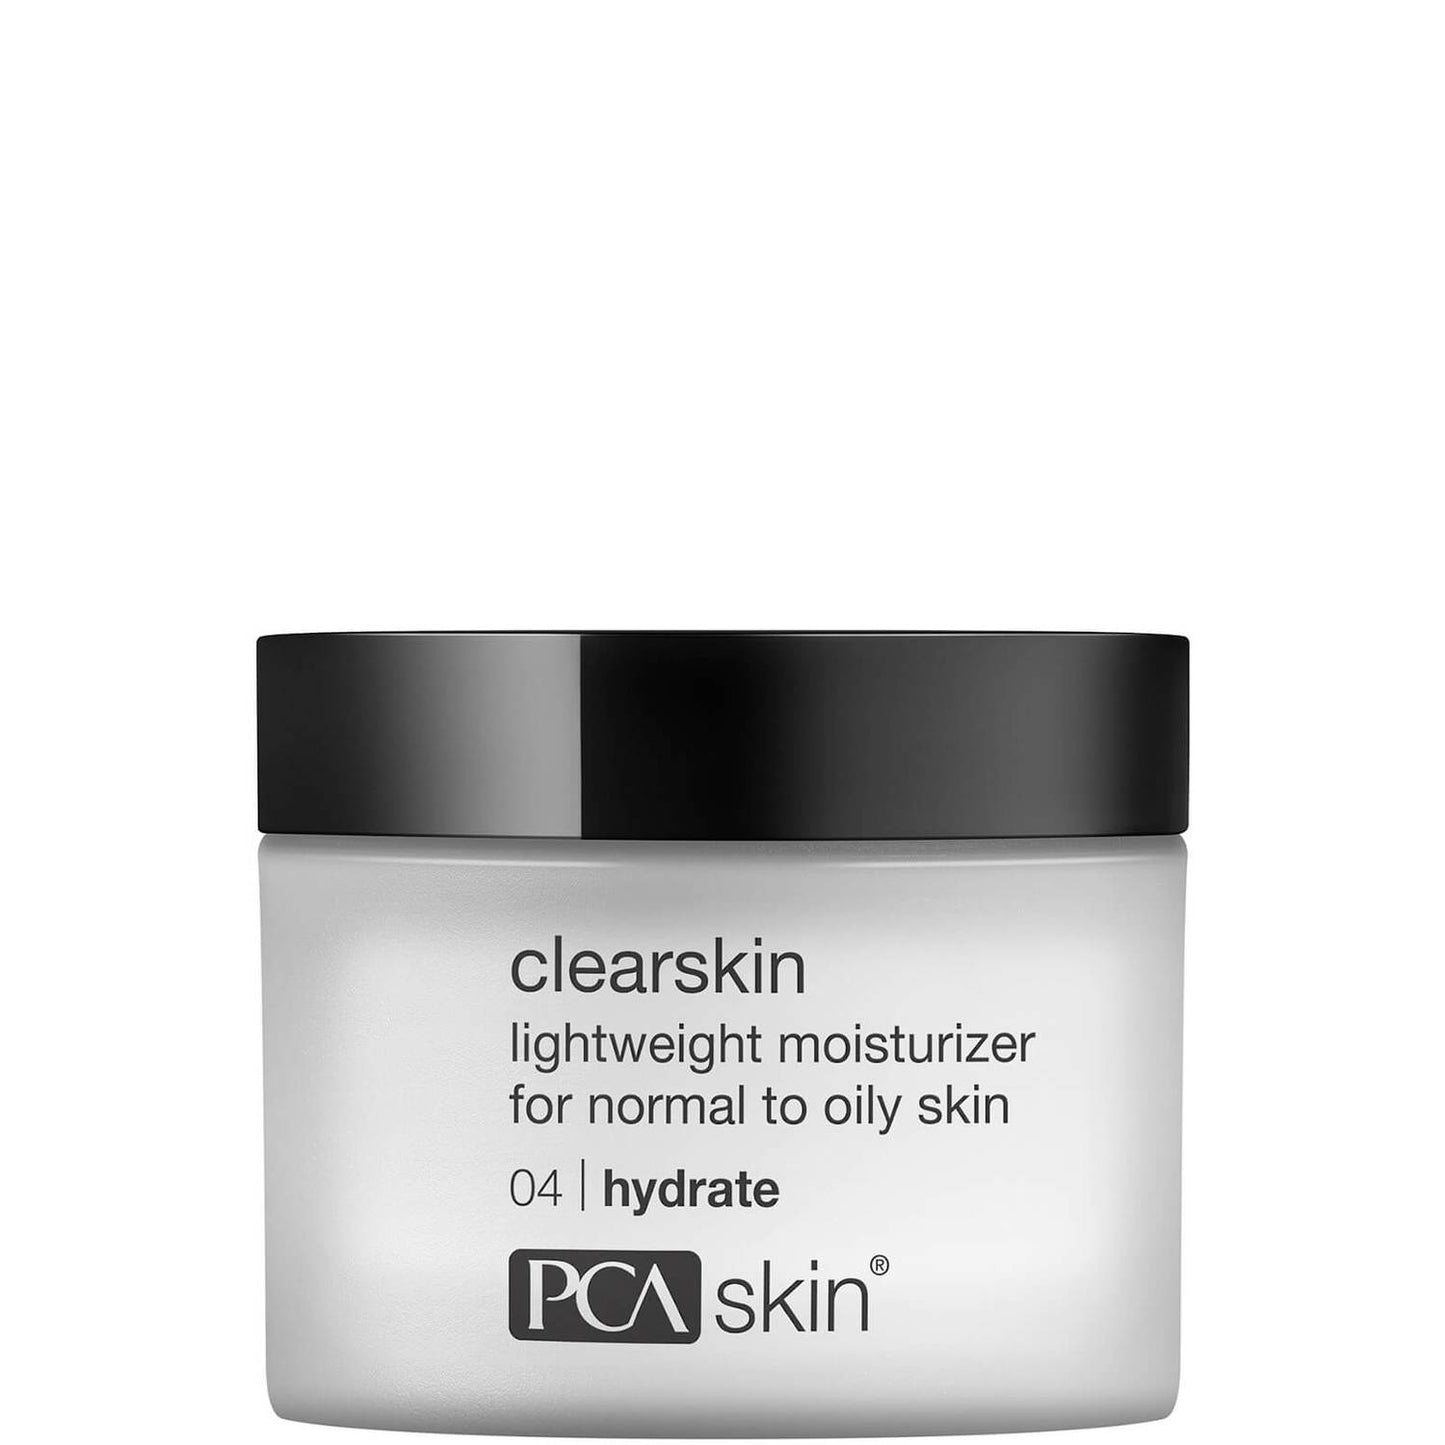 ClearSkin - Pearl Skin Studio